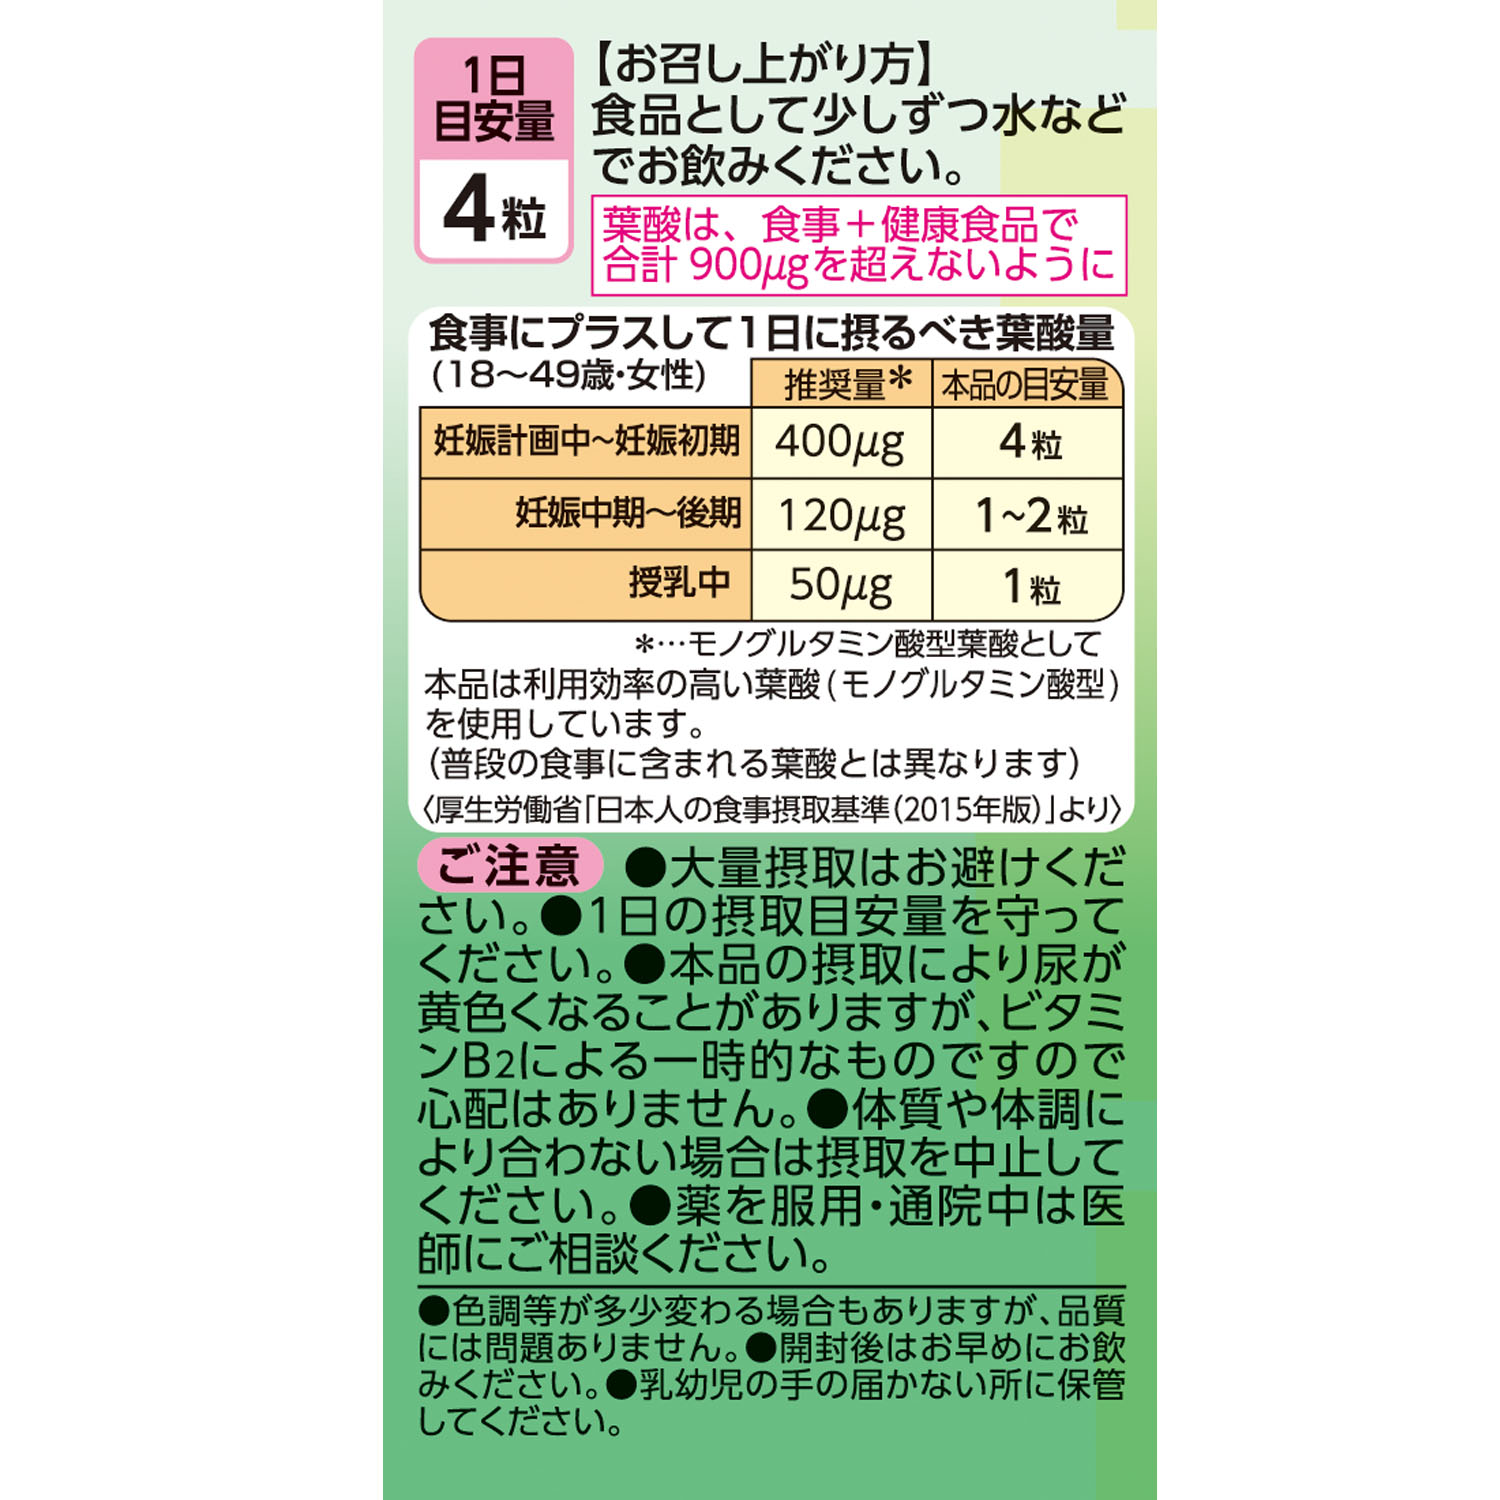 葉酸４００ Ｃａ・Ｆｅプラス | 健康食品のことなら井藤漢方製薬